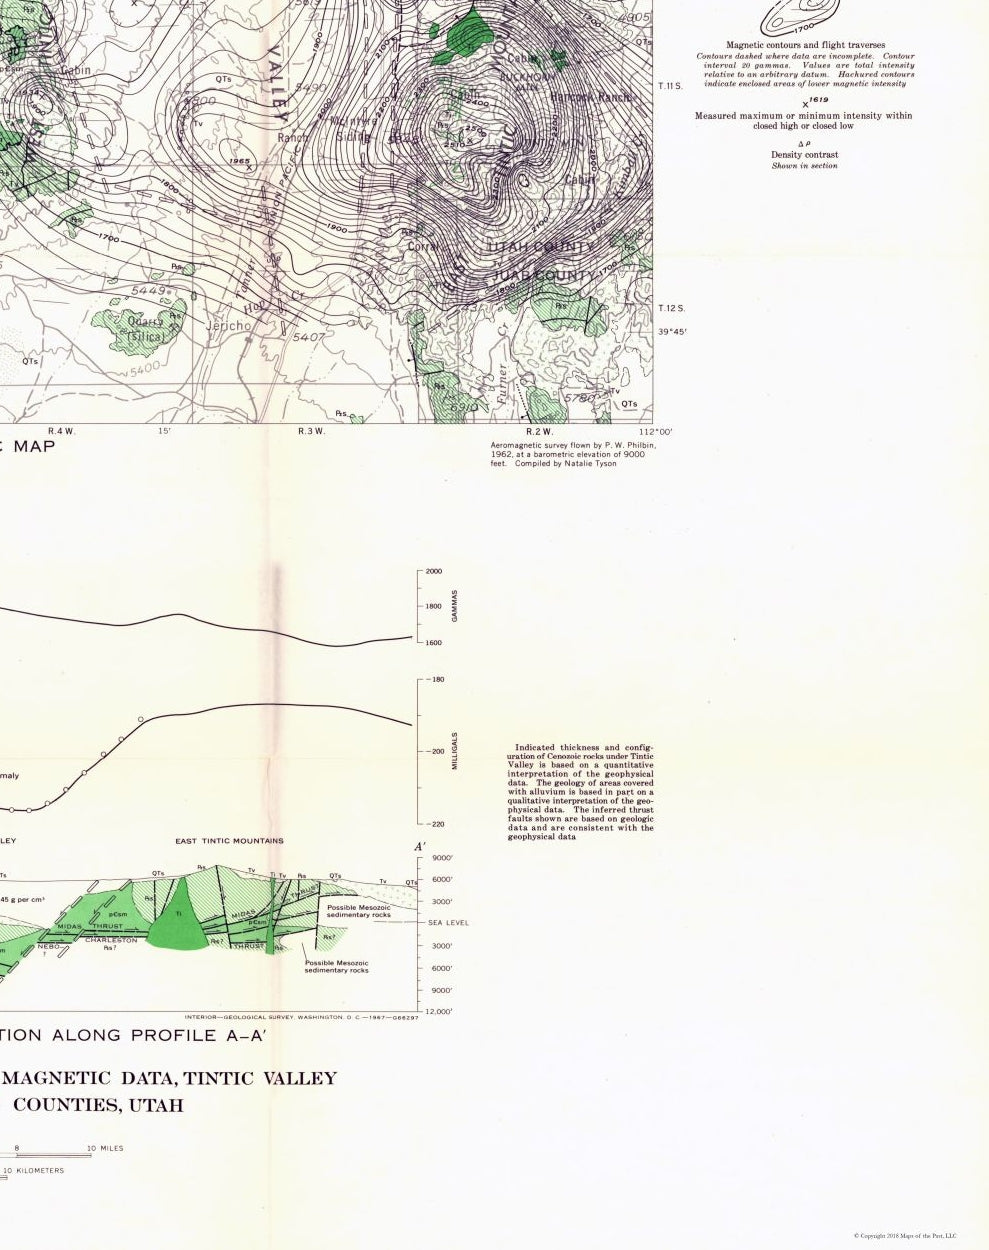 Historic Mine Map - Utah Tintic Valley Aeromagnetic - USGS 1962 - 23 x 29.05 - Vintage Wall Art